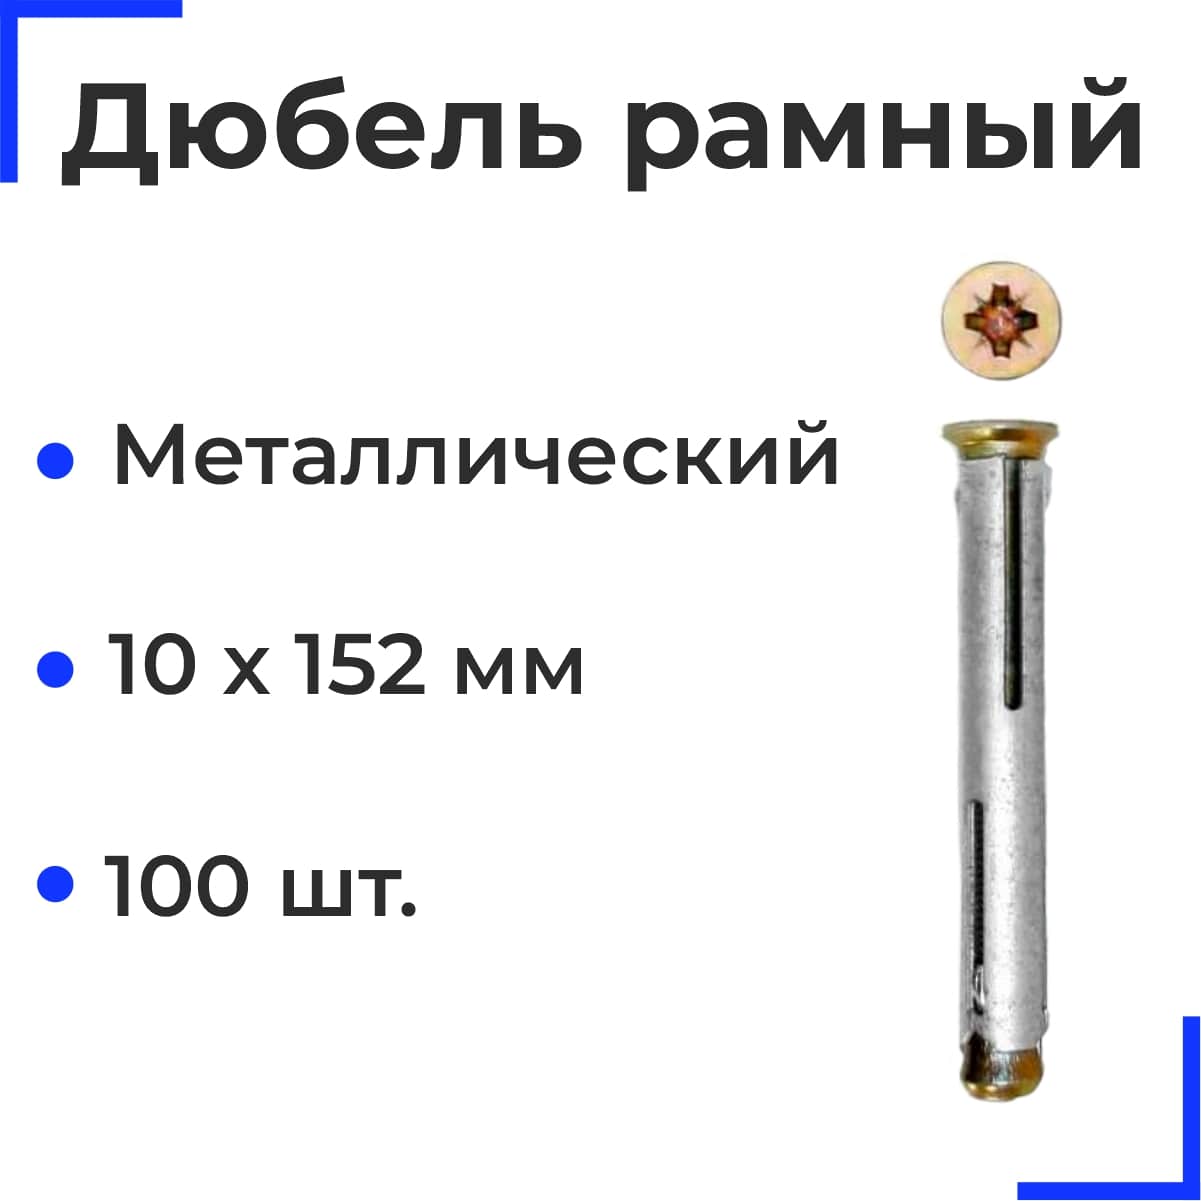 Металлический рамный дюбель 10х152 (100 шт)